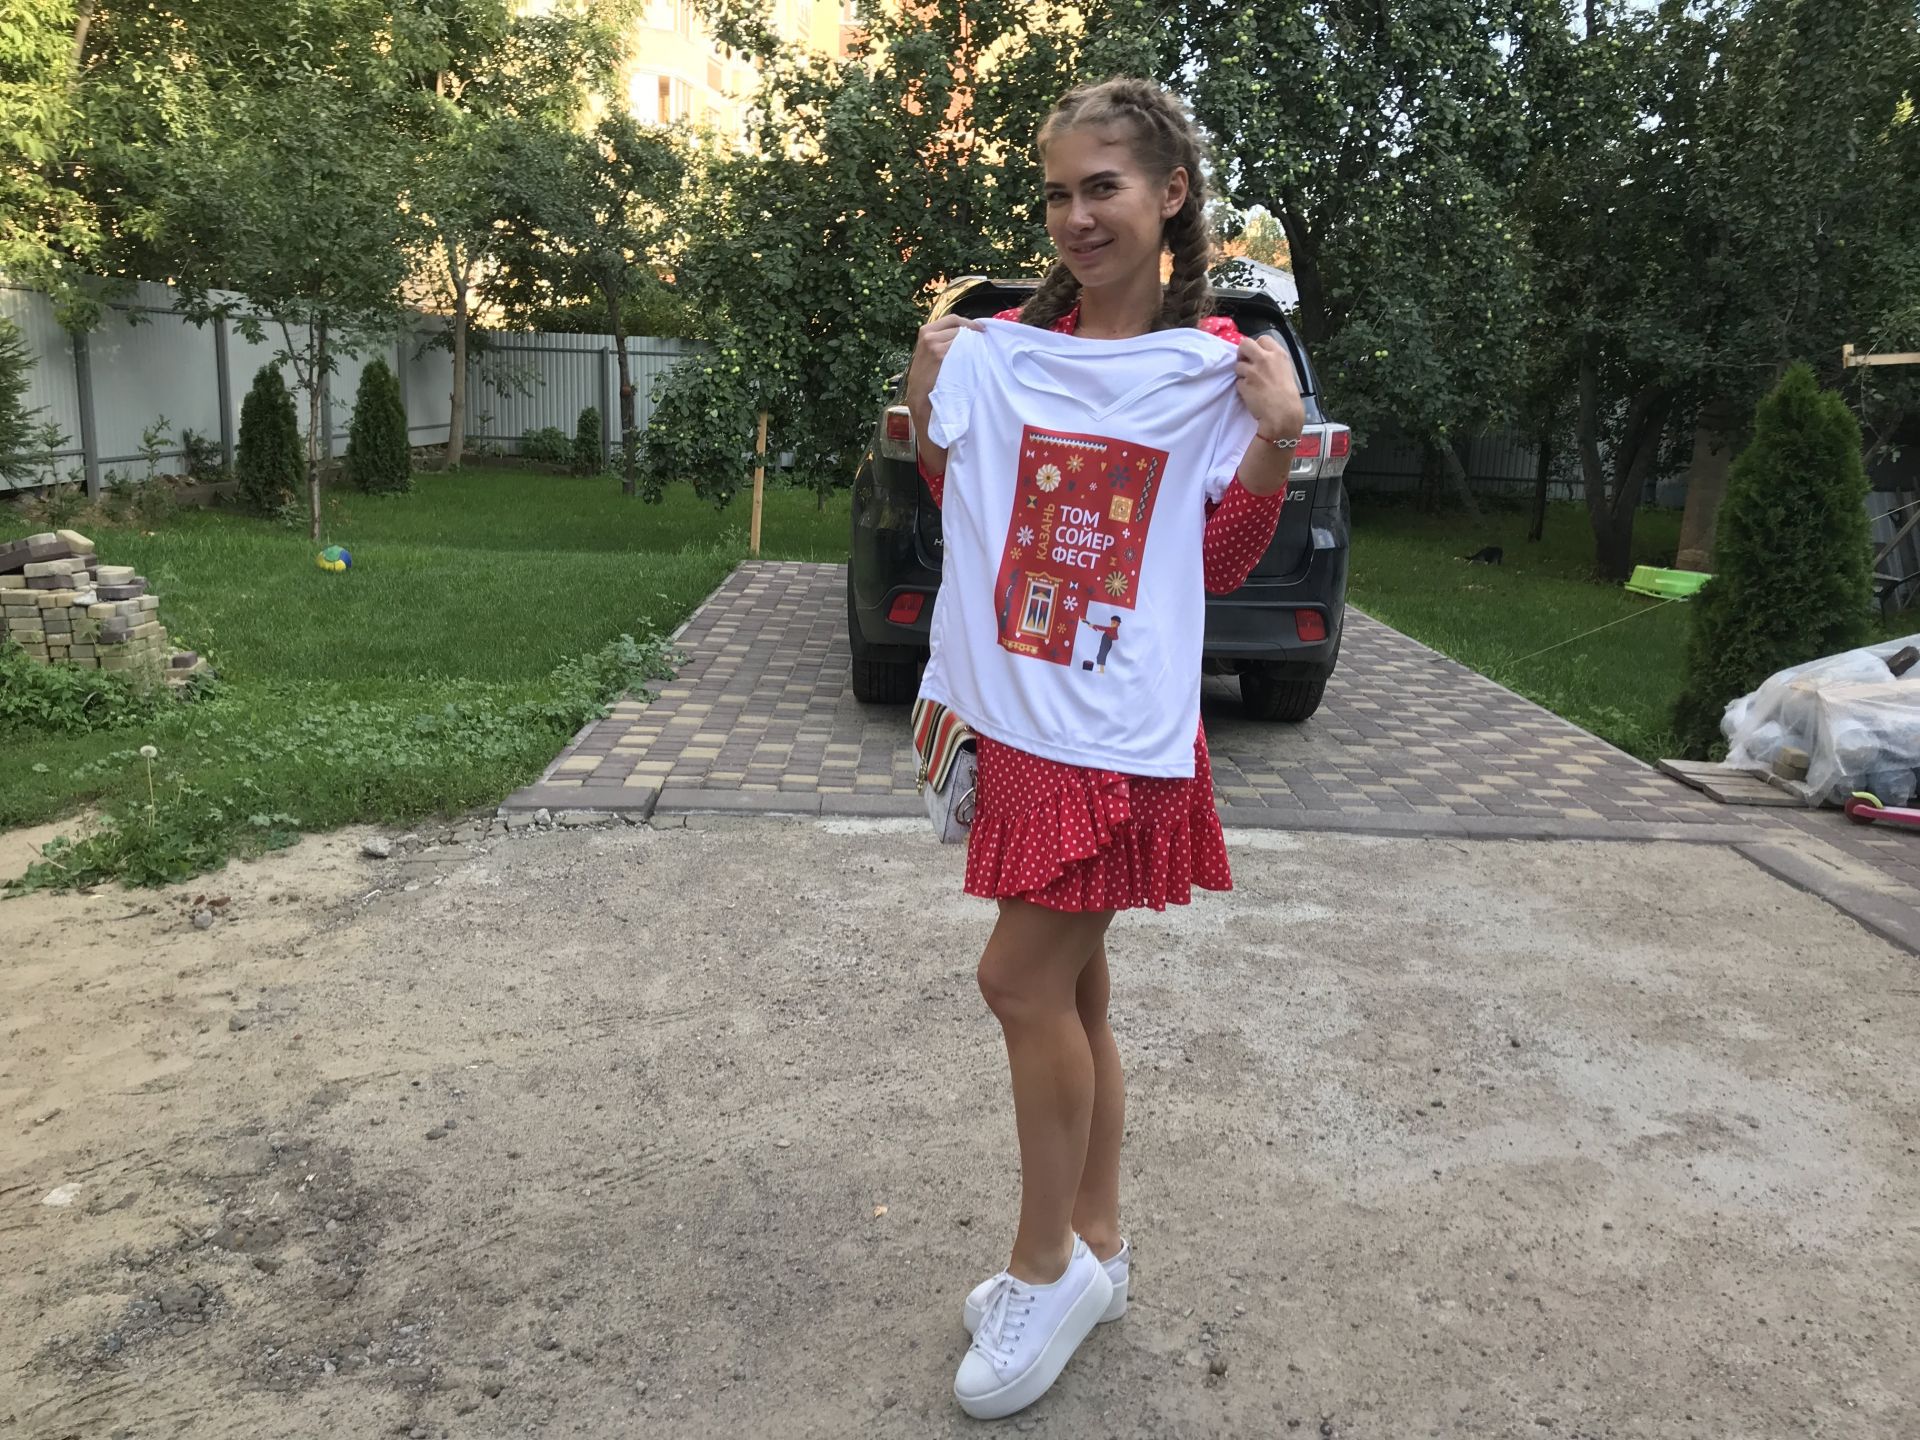 Фестиваль Тома Сойера 2019 в Казани: дочь привела маму. 23 июля 2019